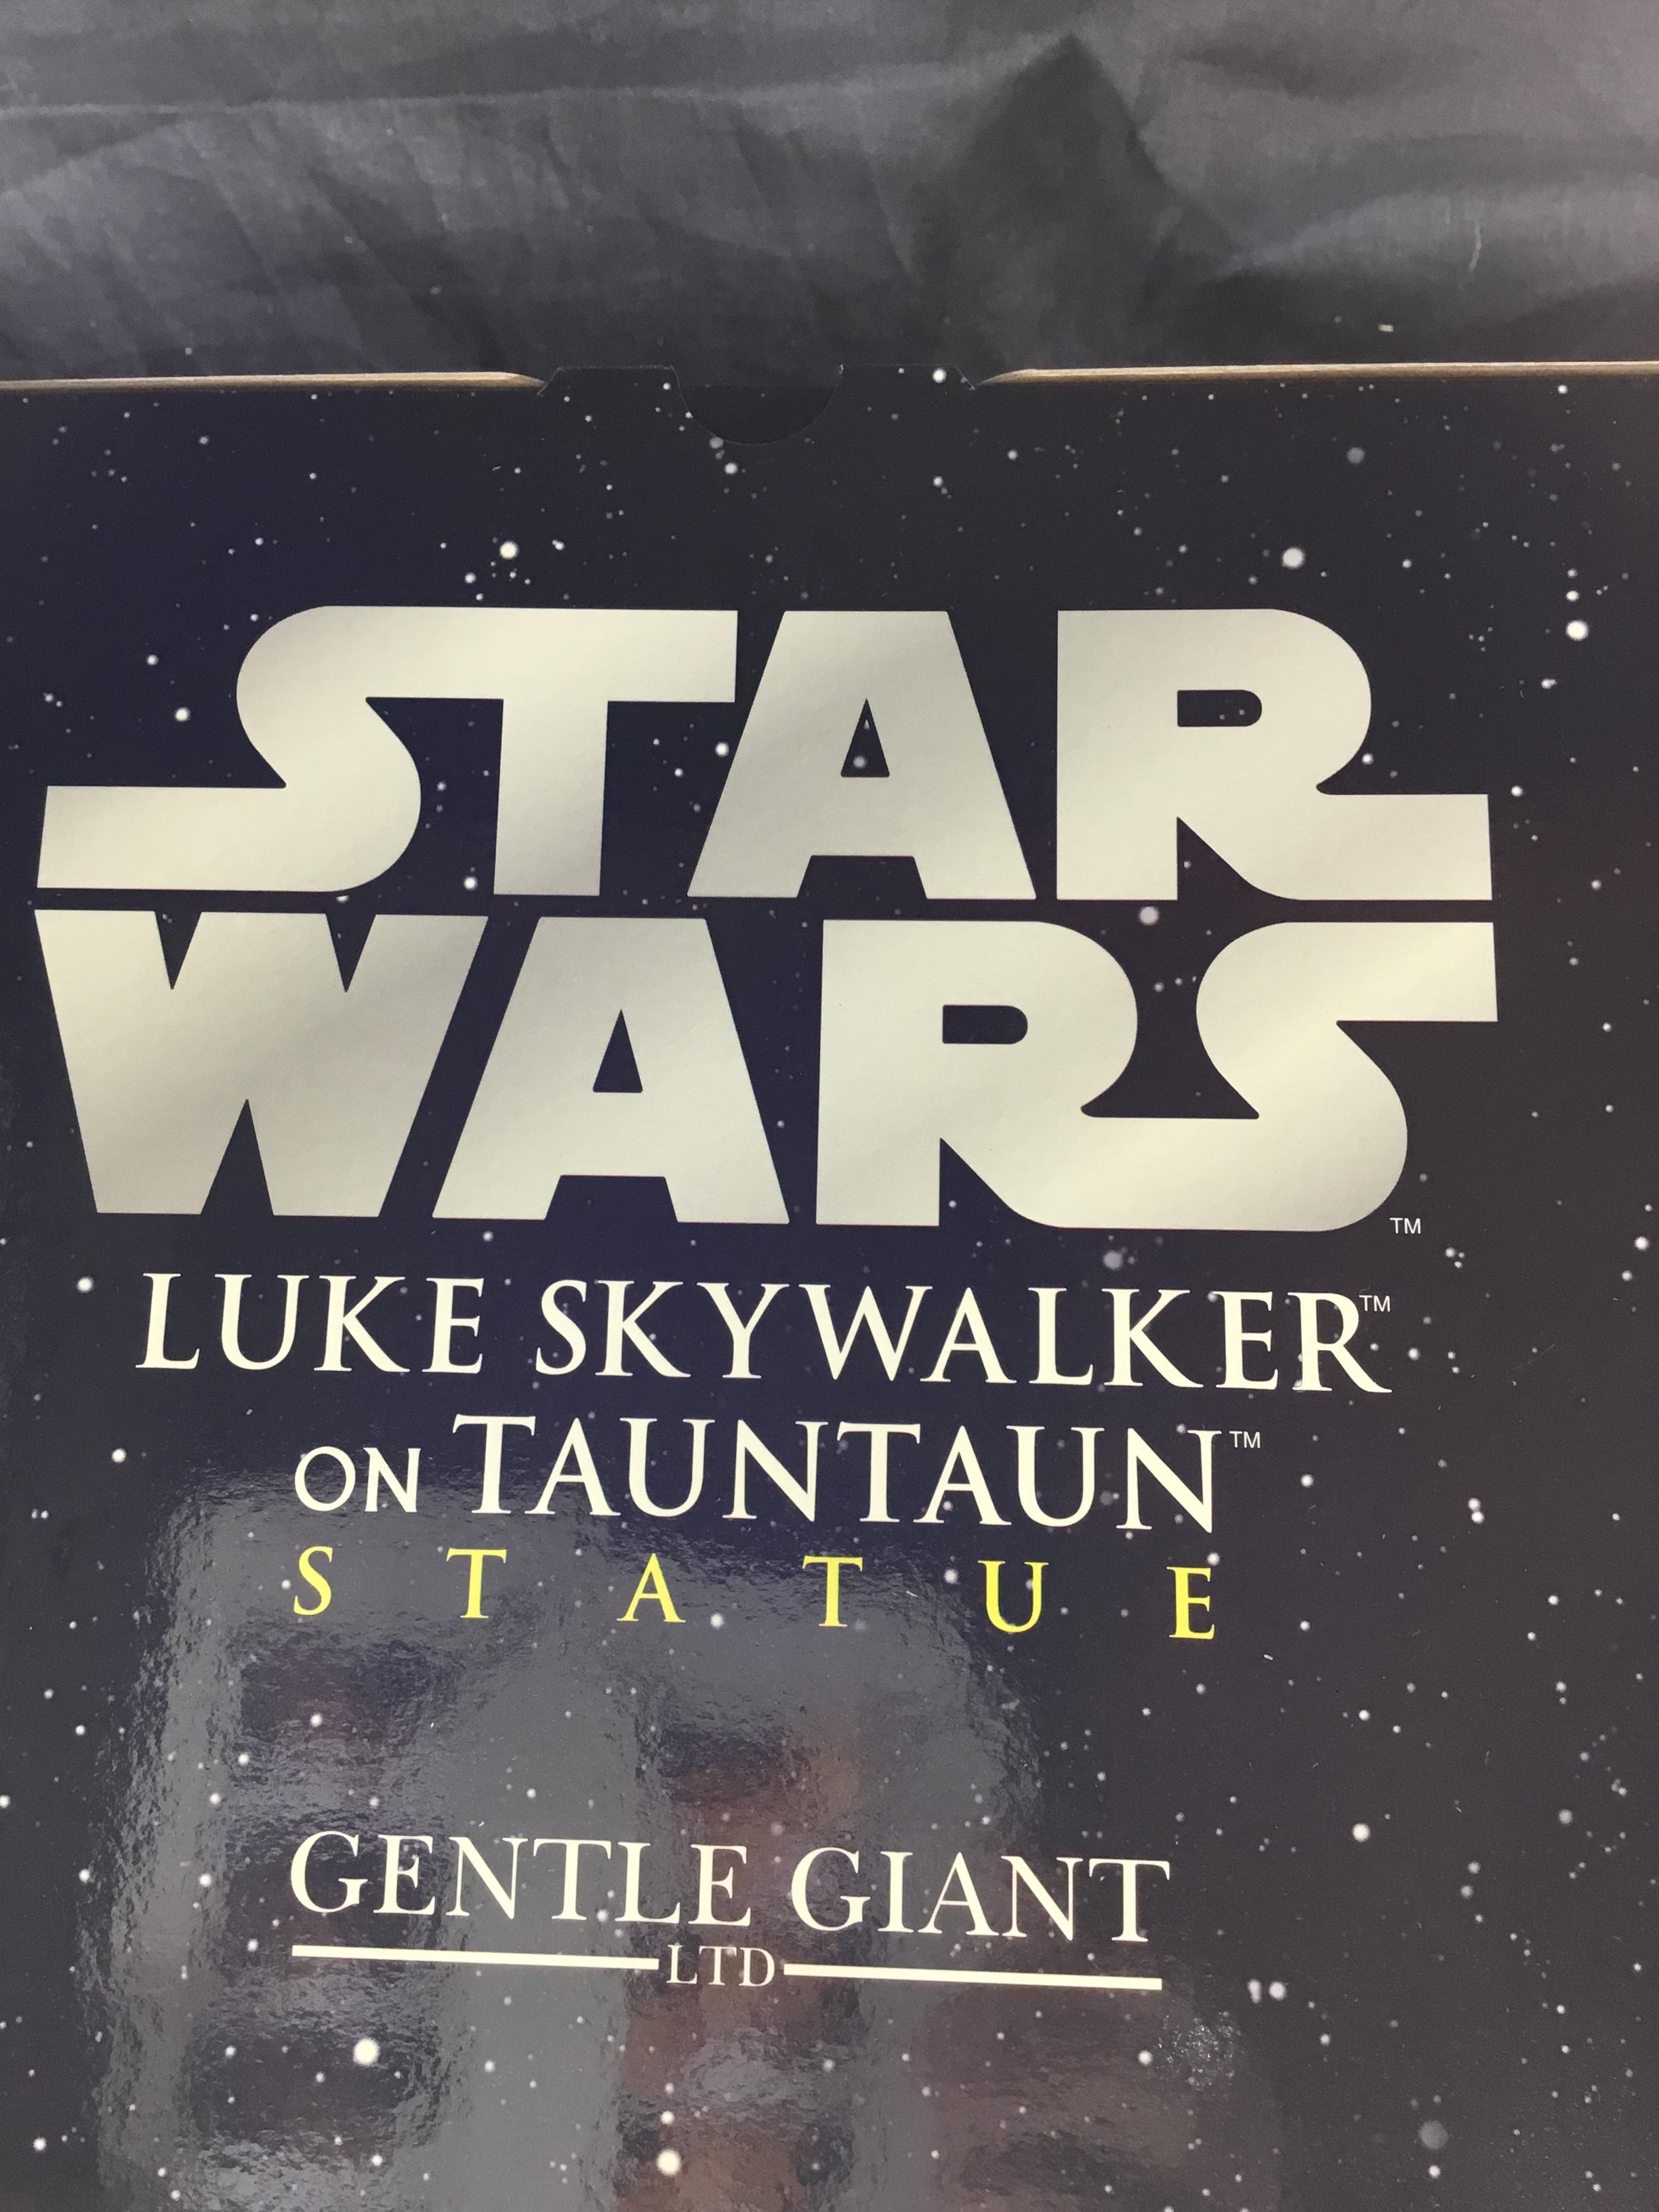 Luke Skywalker tauntan statue